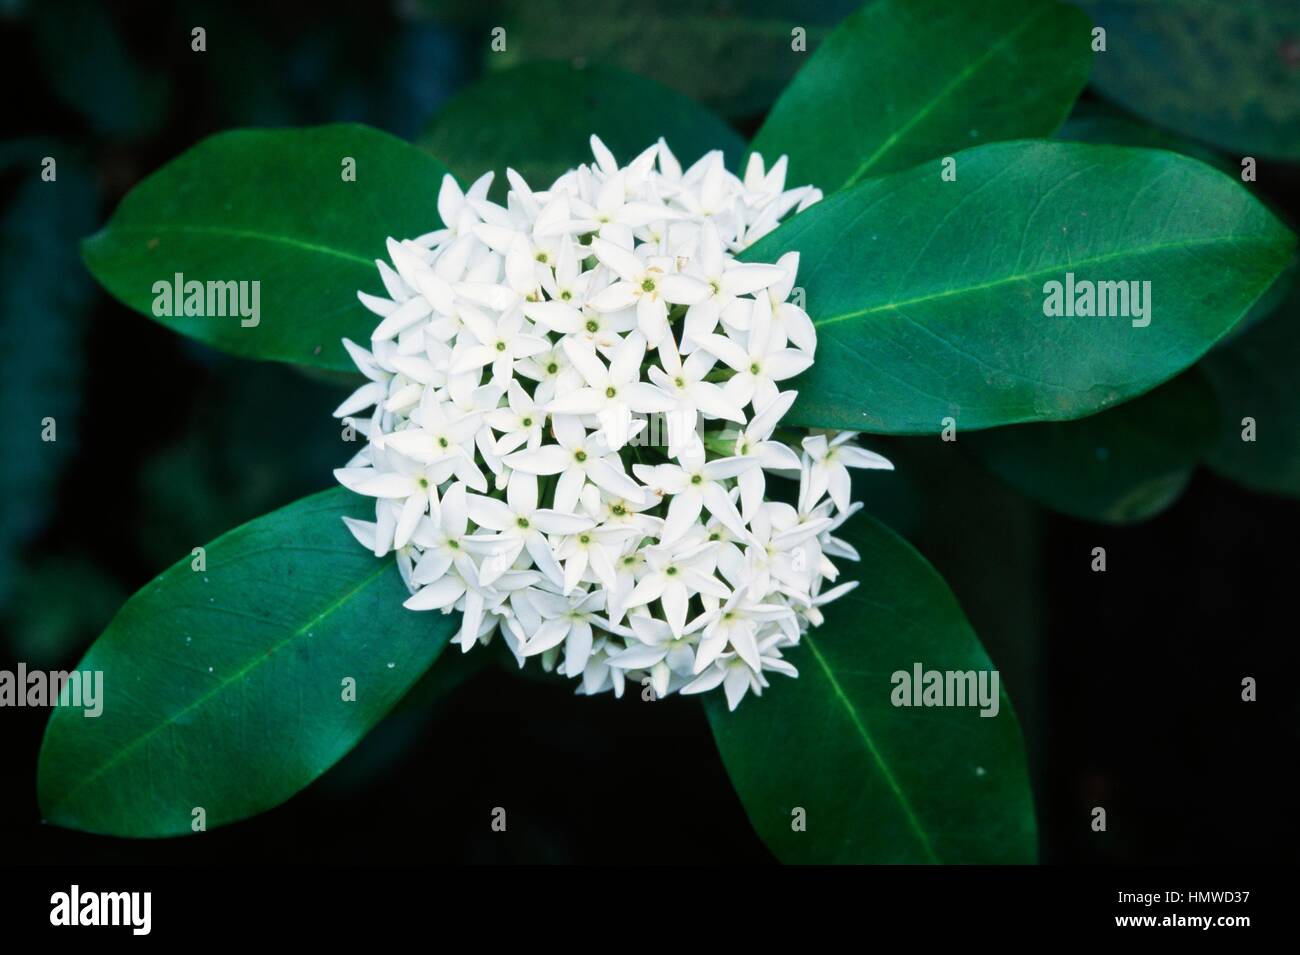 Acokanthera (Acokanthera spectabilis), Apocynaceae. Stock Photo